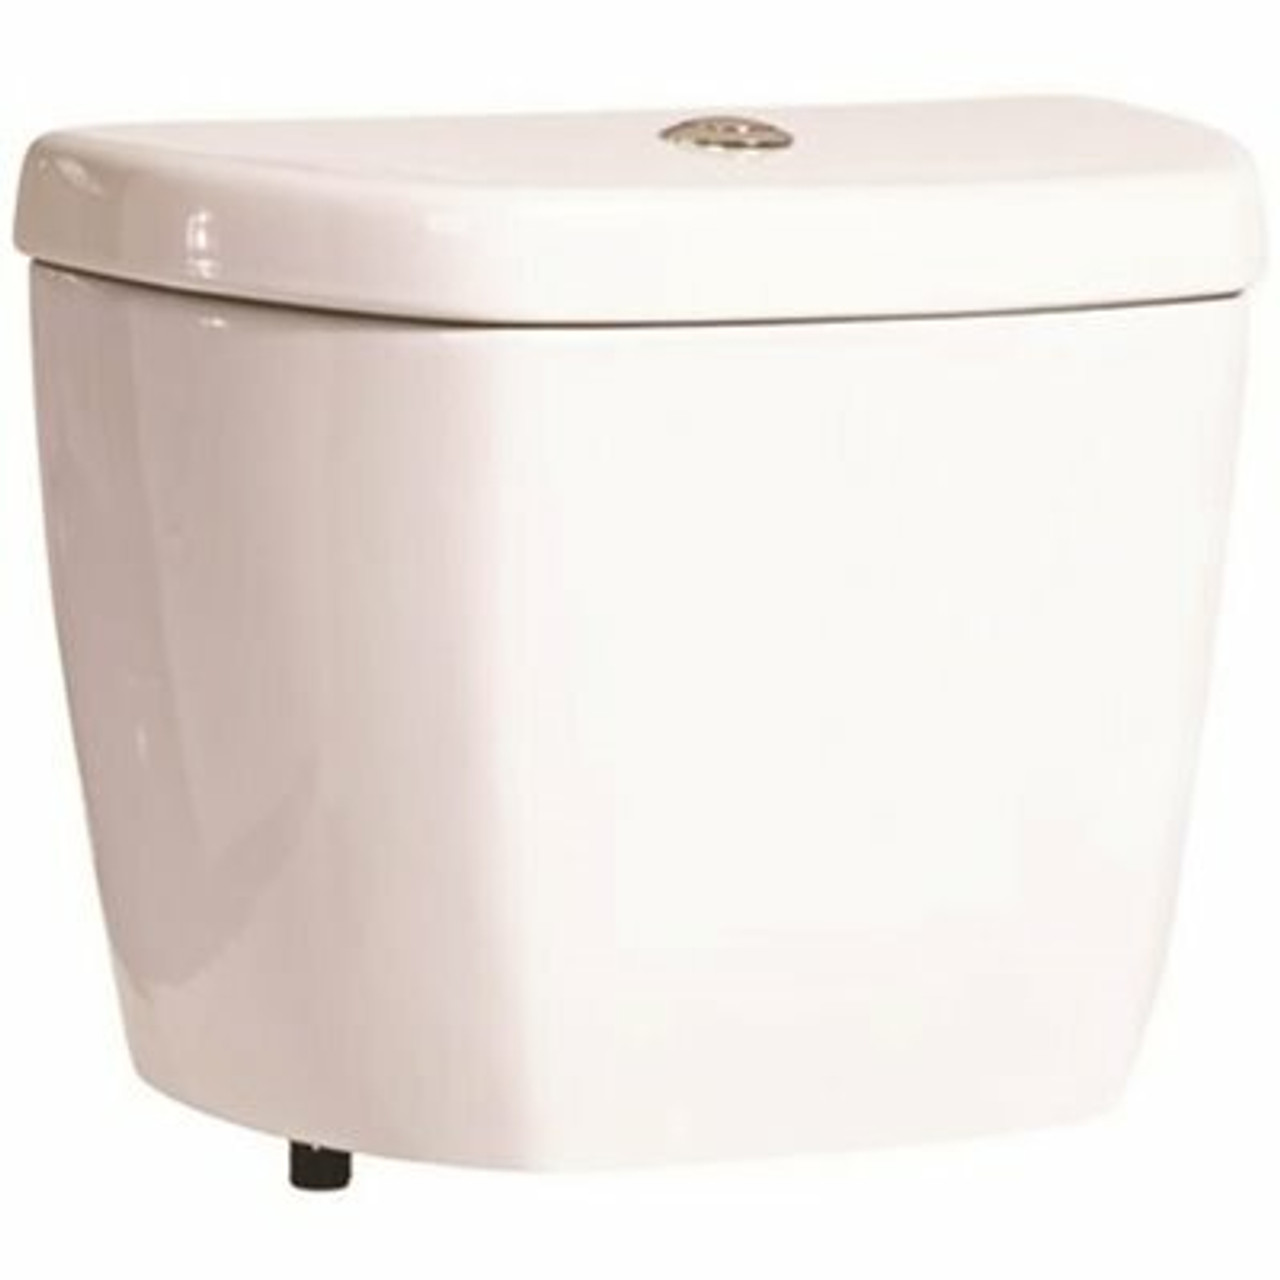 Niagara Stealth 0.8 Gpf Single Flush Toilet Tank Only In White